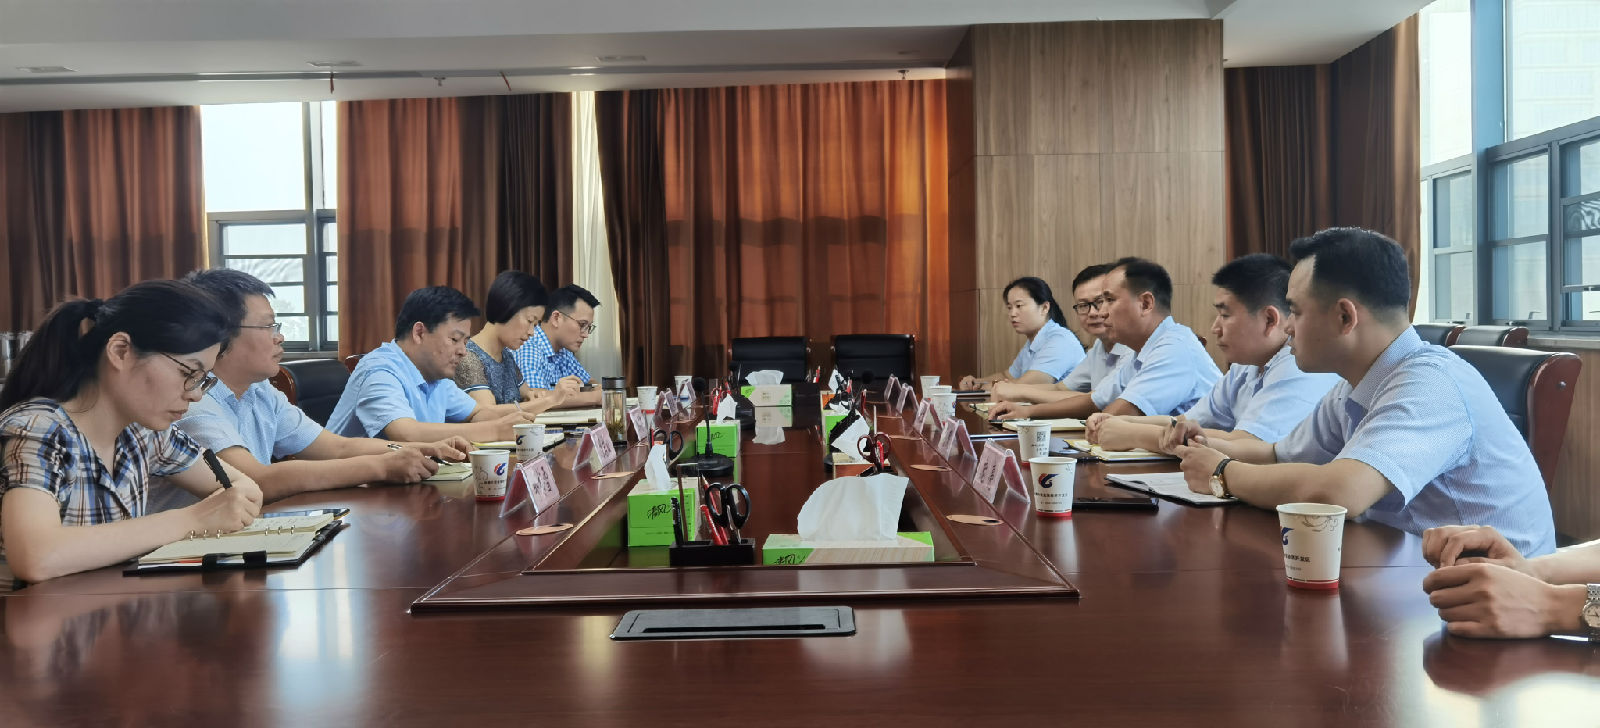 安徽六安金安经济开发区管委会与六安农村商业银行签订政银战略合作协议